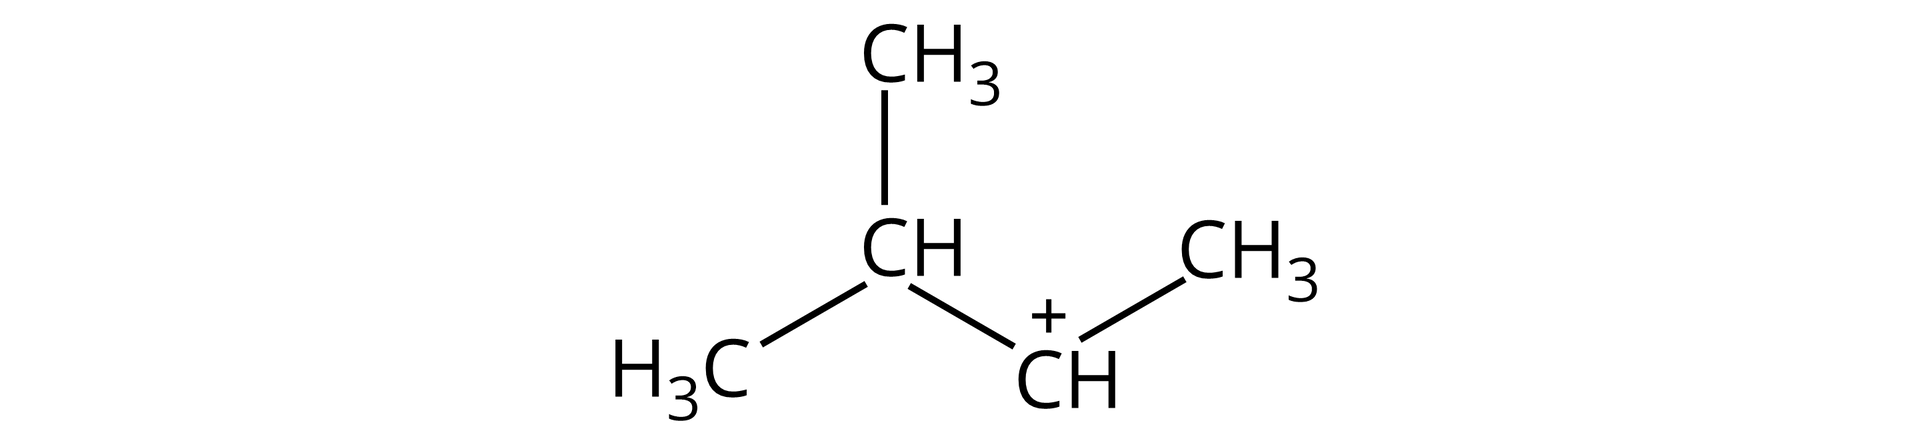 Karbokation 3‑metylo‑2-butylowy o strukturze grupa CH obdarzona cząstkowym ładunkiem dodatnim związana z grupą CH3 oraz grupą CH, która to łączy się z dwiema grupami CH3.